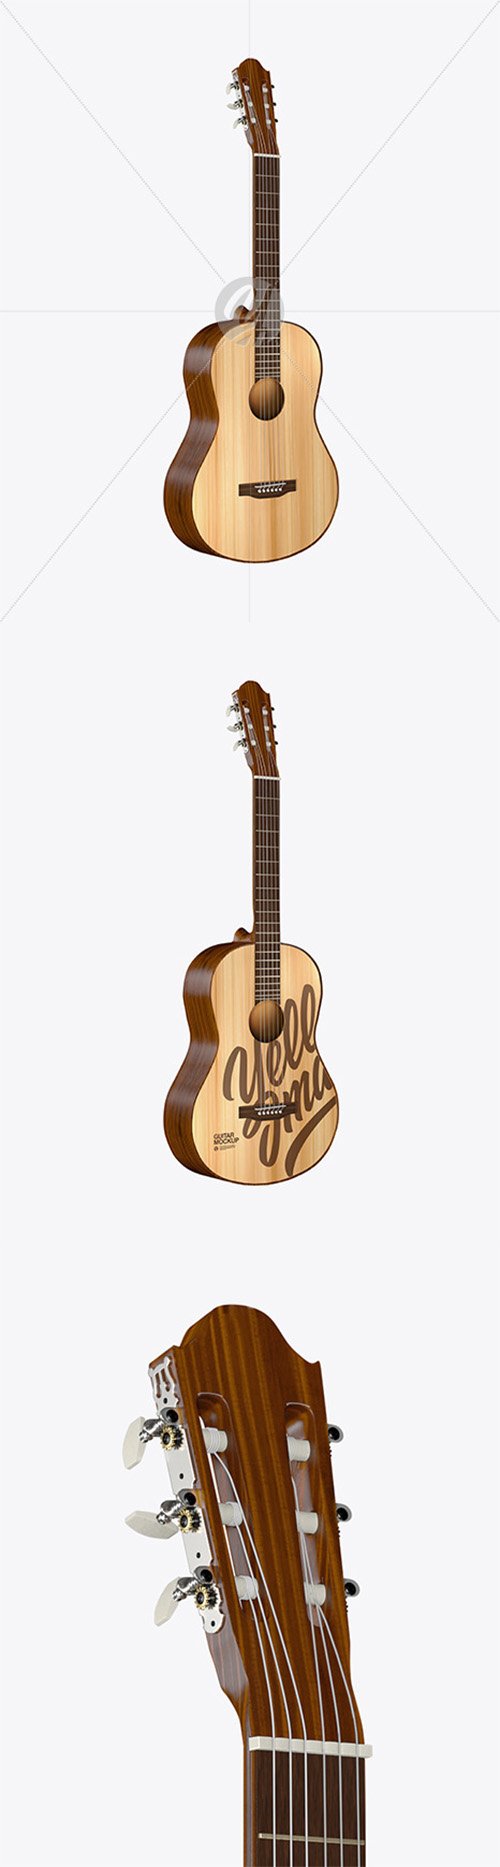 Wooden Classic Guitar Mockup 67422 TIF